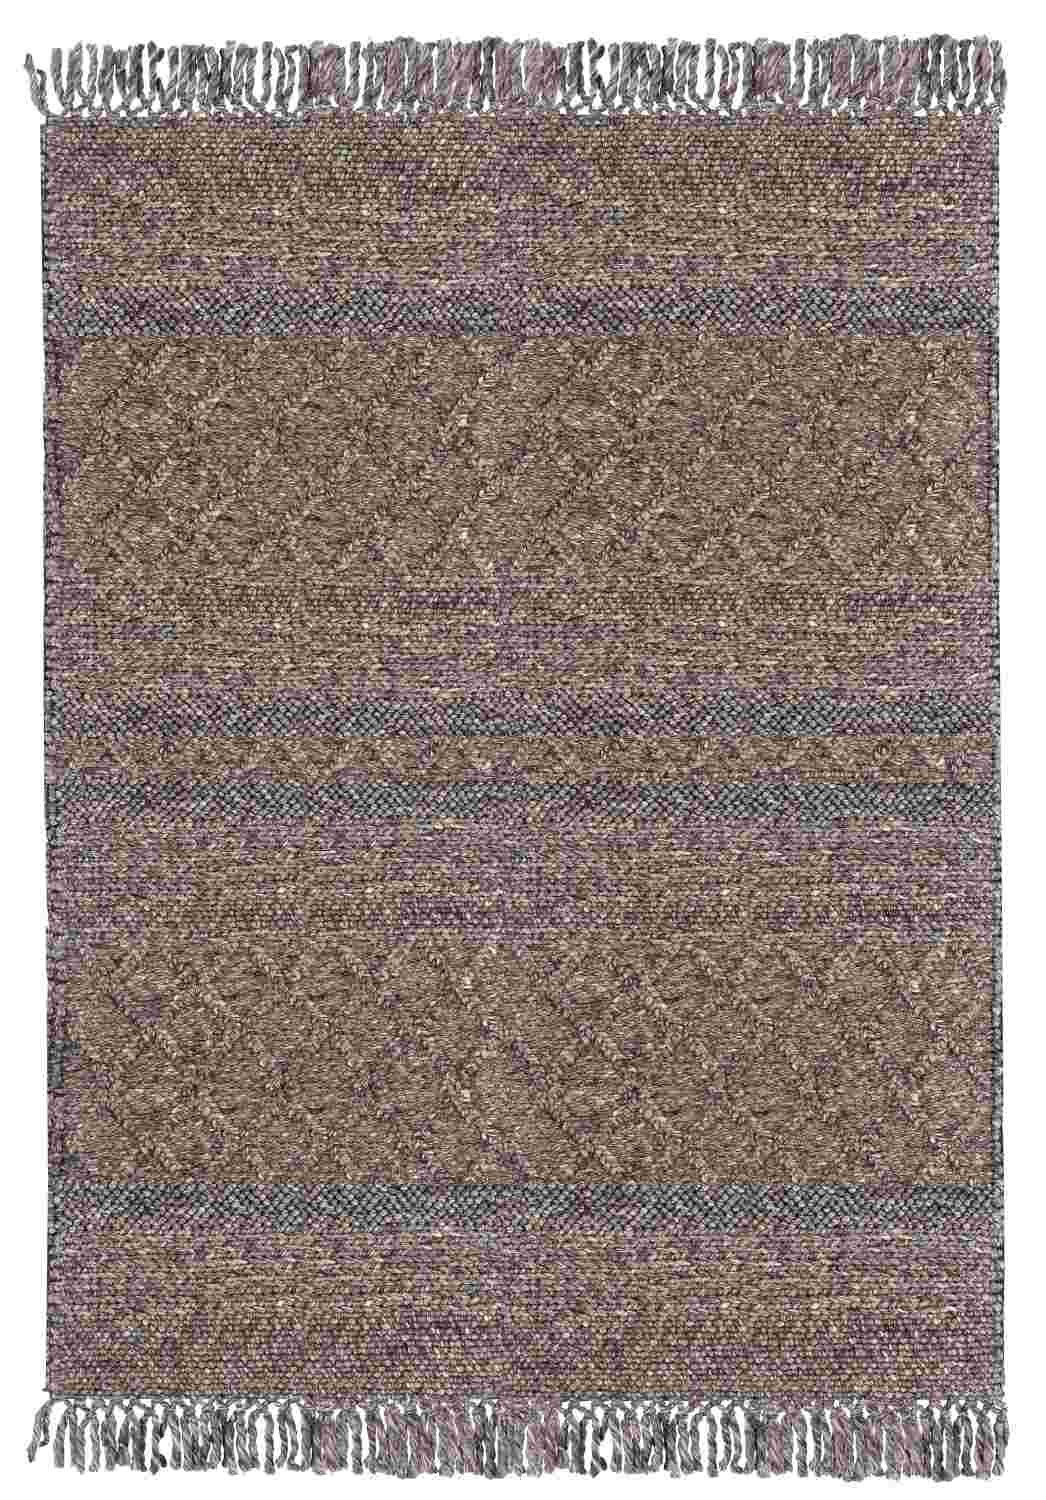 Der Teppich Hiruni überzeugt mit seinem Klassischen Design. Gefertigt wurde er aus 70% wolle und 30% Polyester. Der Teppich besitzt eine braunen Farbton und die Maße von 160x230 cm.